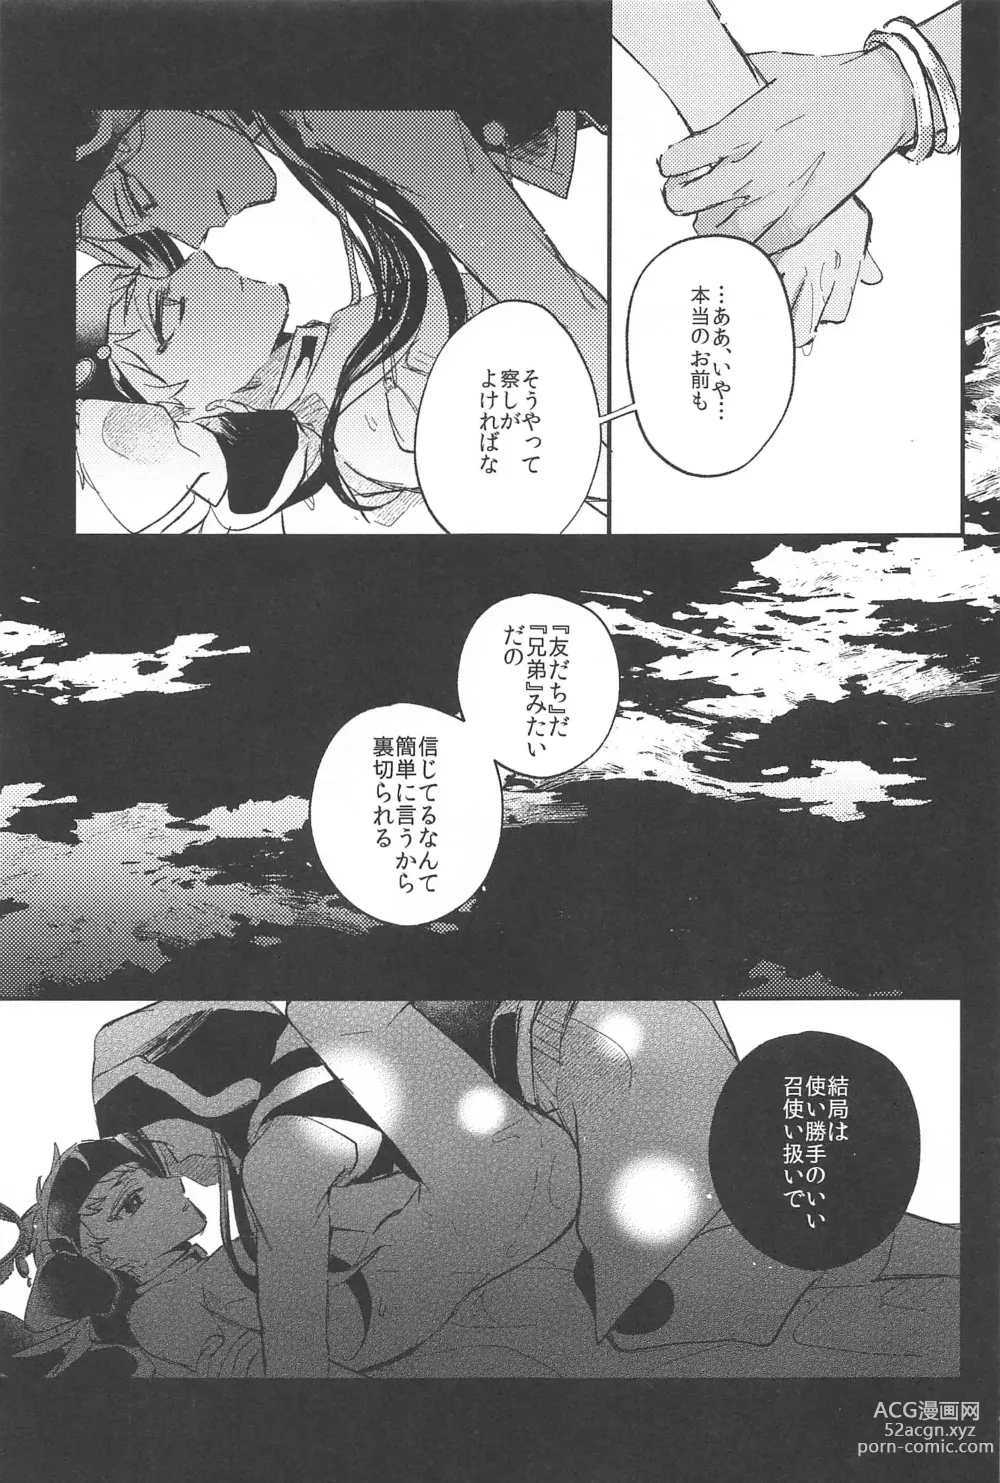 Page 18 of doujinshi Kantan dakara Muzukashii